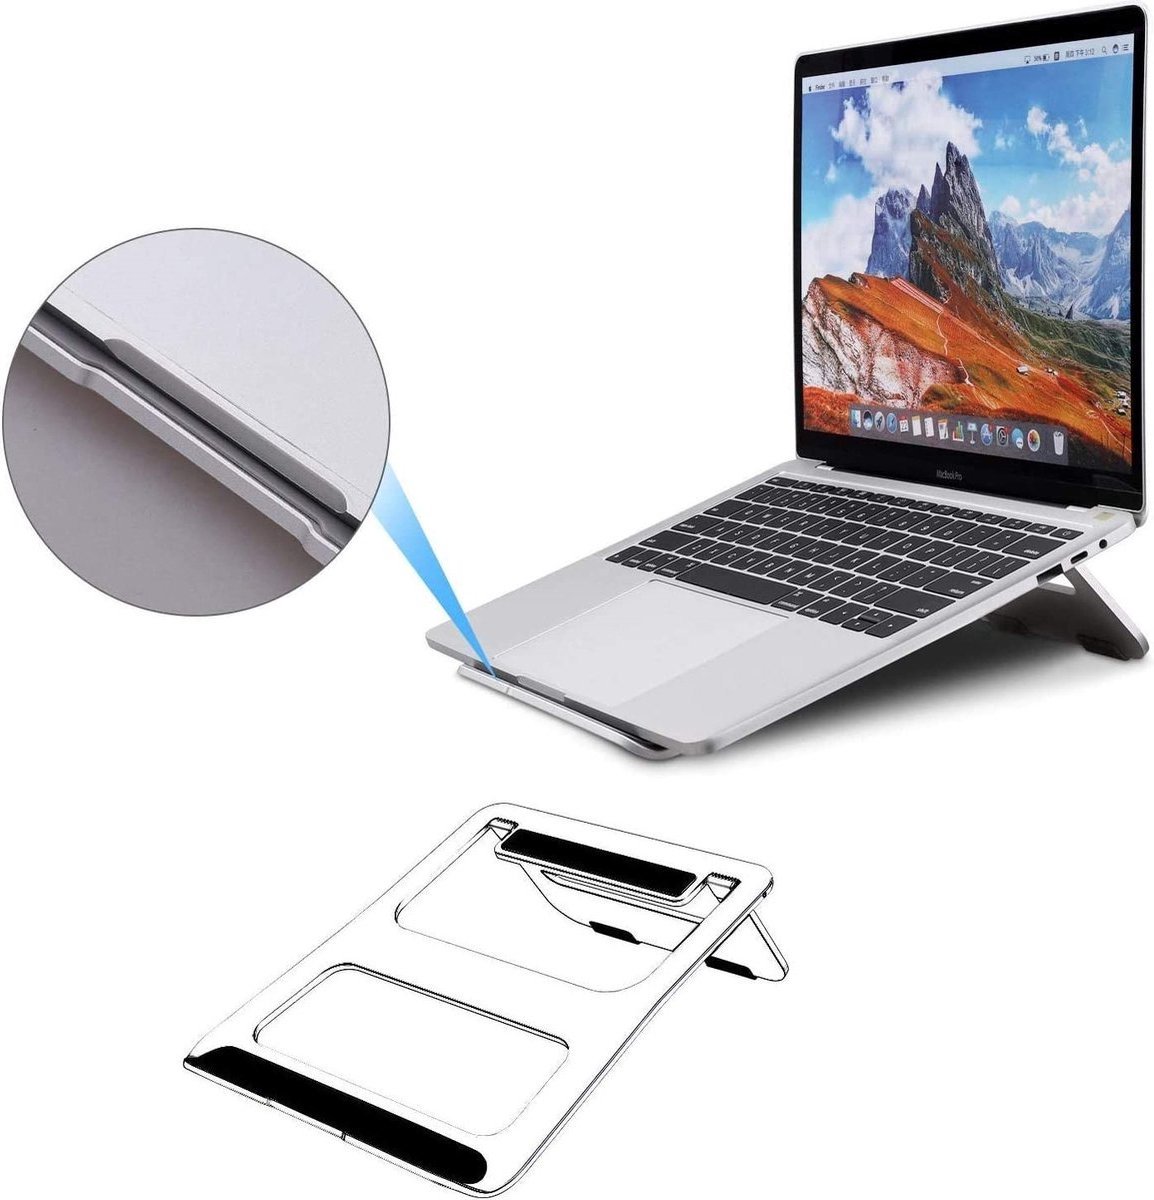 Opvouwbare laptop / macbook standaard - Aluminium - Laptopstandaard - Zilver